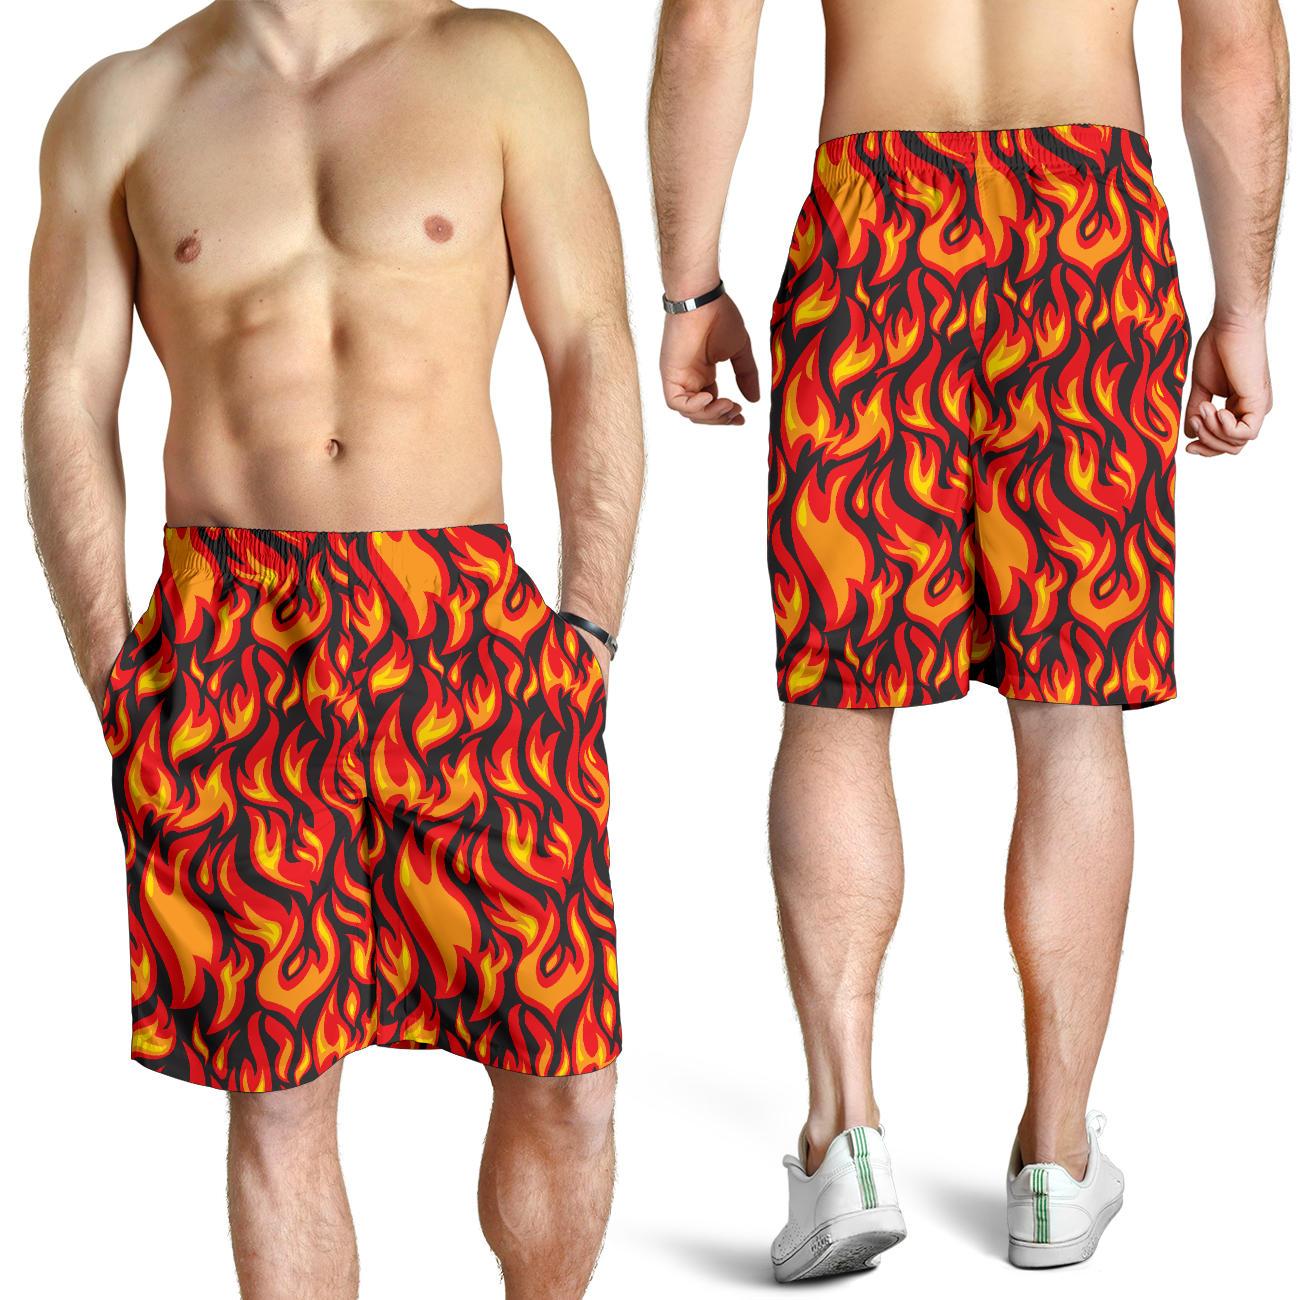 Flame Fire Print Pattern Mens Shorts - JTAMIGO.COM